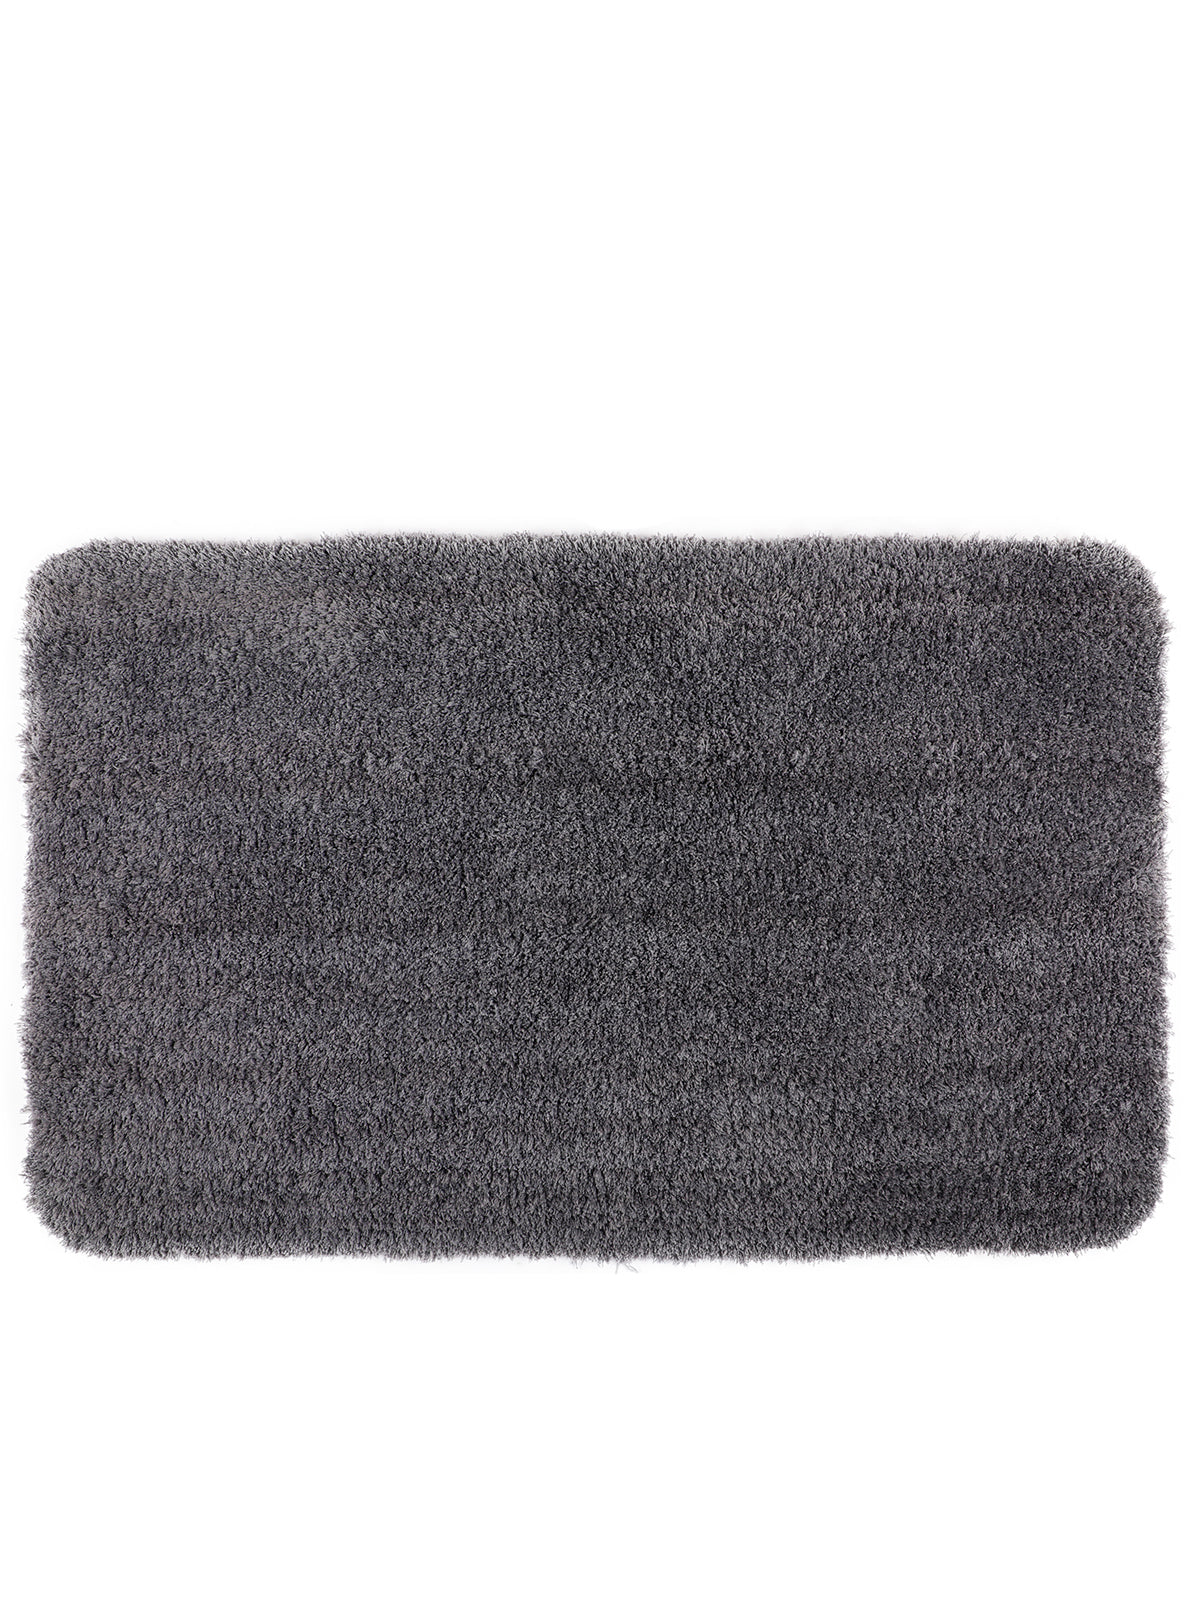 Grey Set of 1 Solid Patterned Microfiber Bathmat